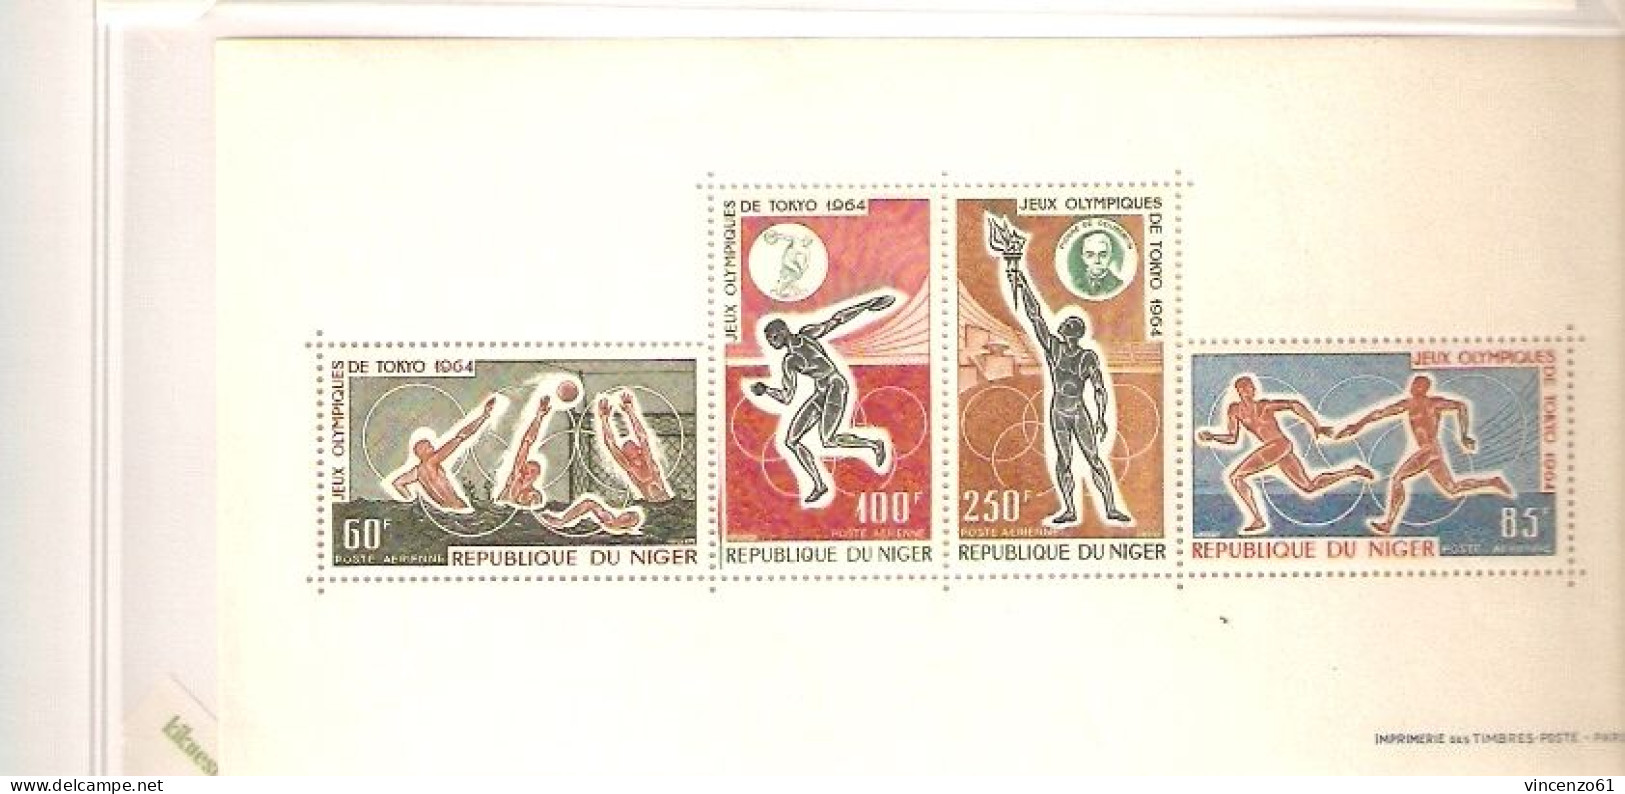 REPUBLIQUE DU NIGER TOKIO 1964 OLIMPIC GAMES - Sommer 1964: Tokio